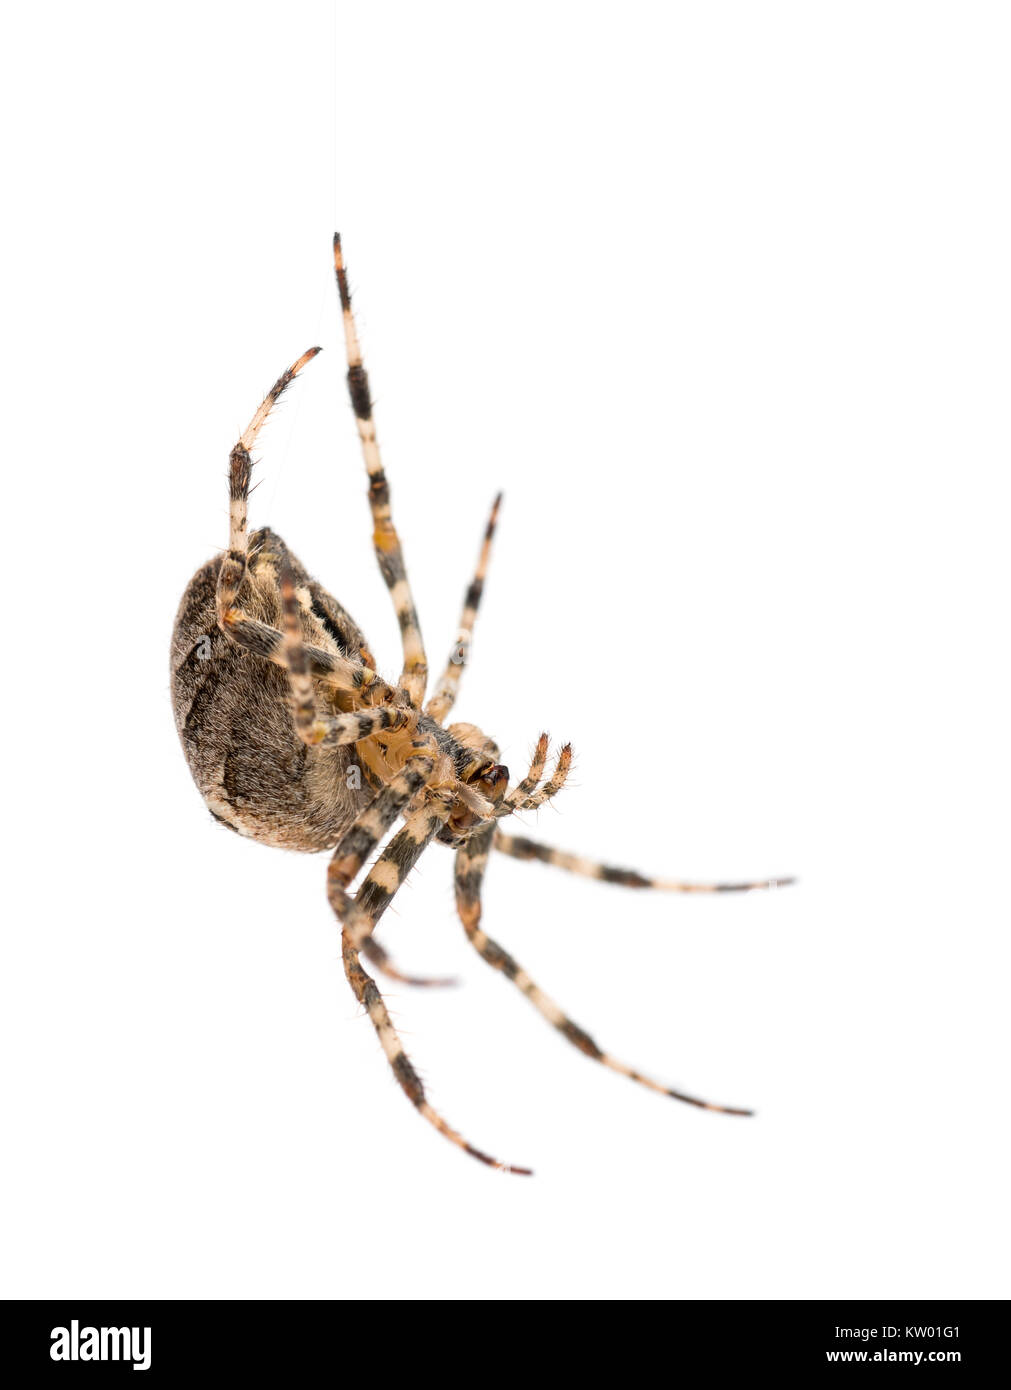 European Garden Spider, Araneus diadematus, hängend auf Seide Saite vor weißem Hintergrund Stockfoto